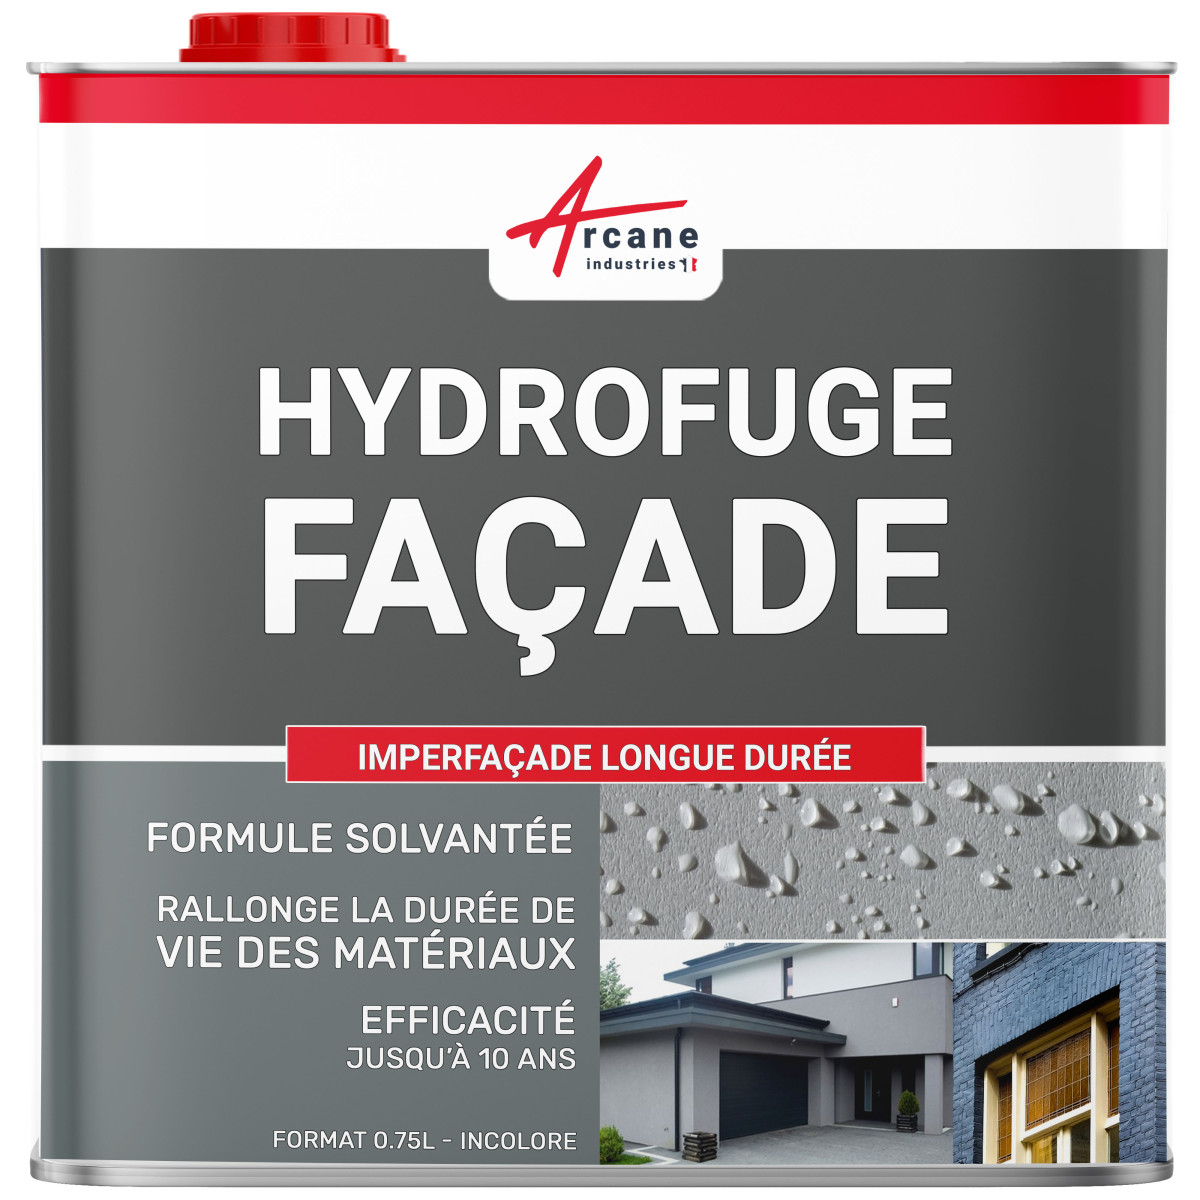 Hydrofuge façade